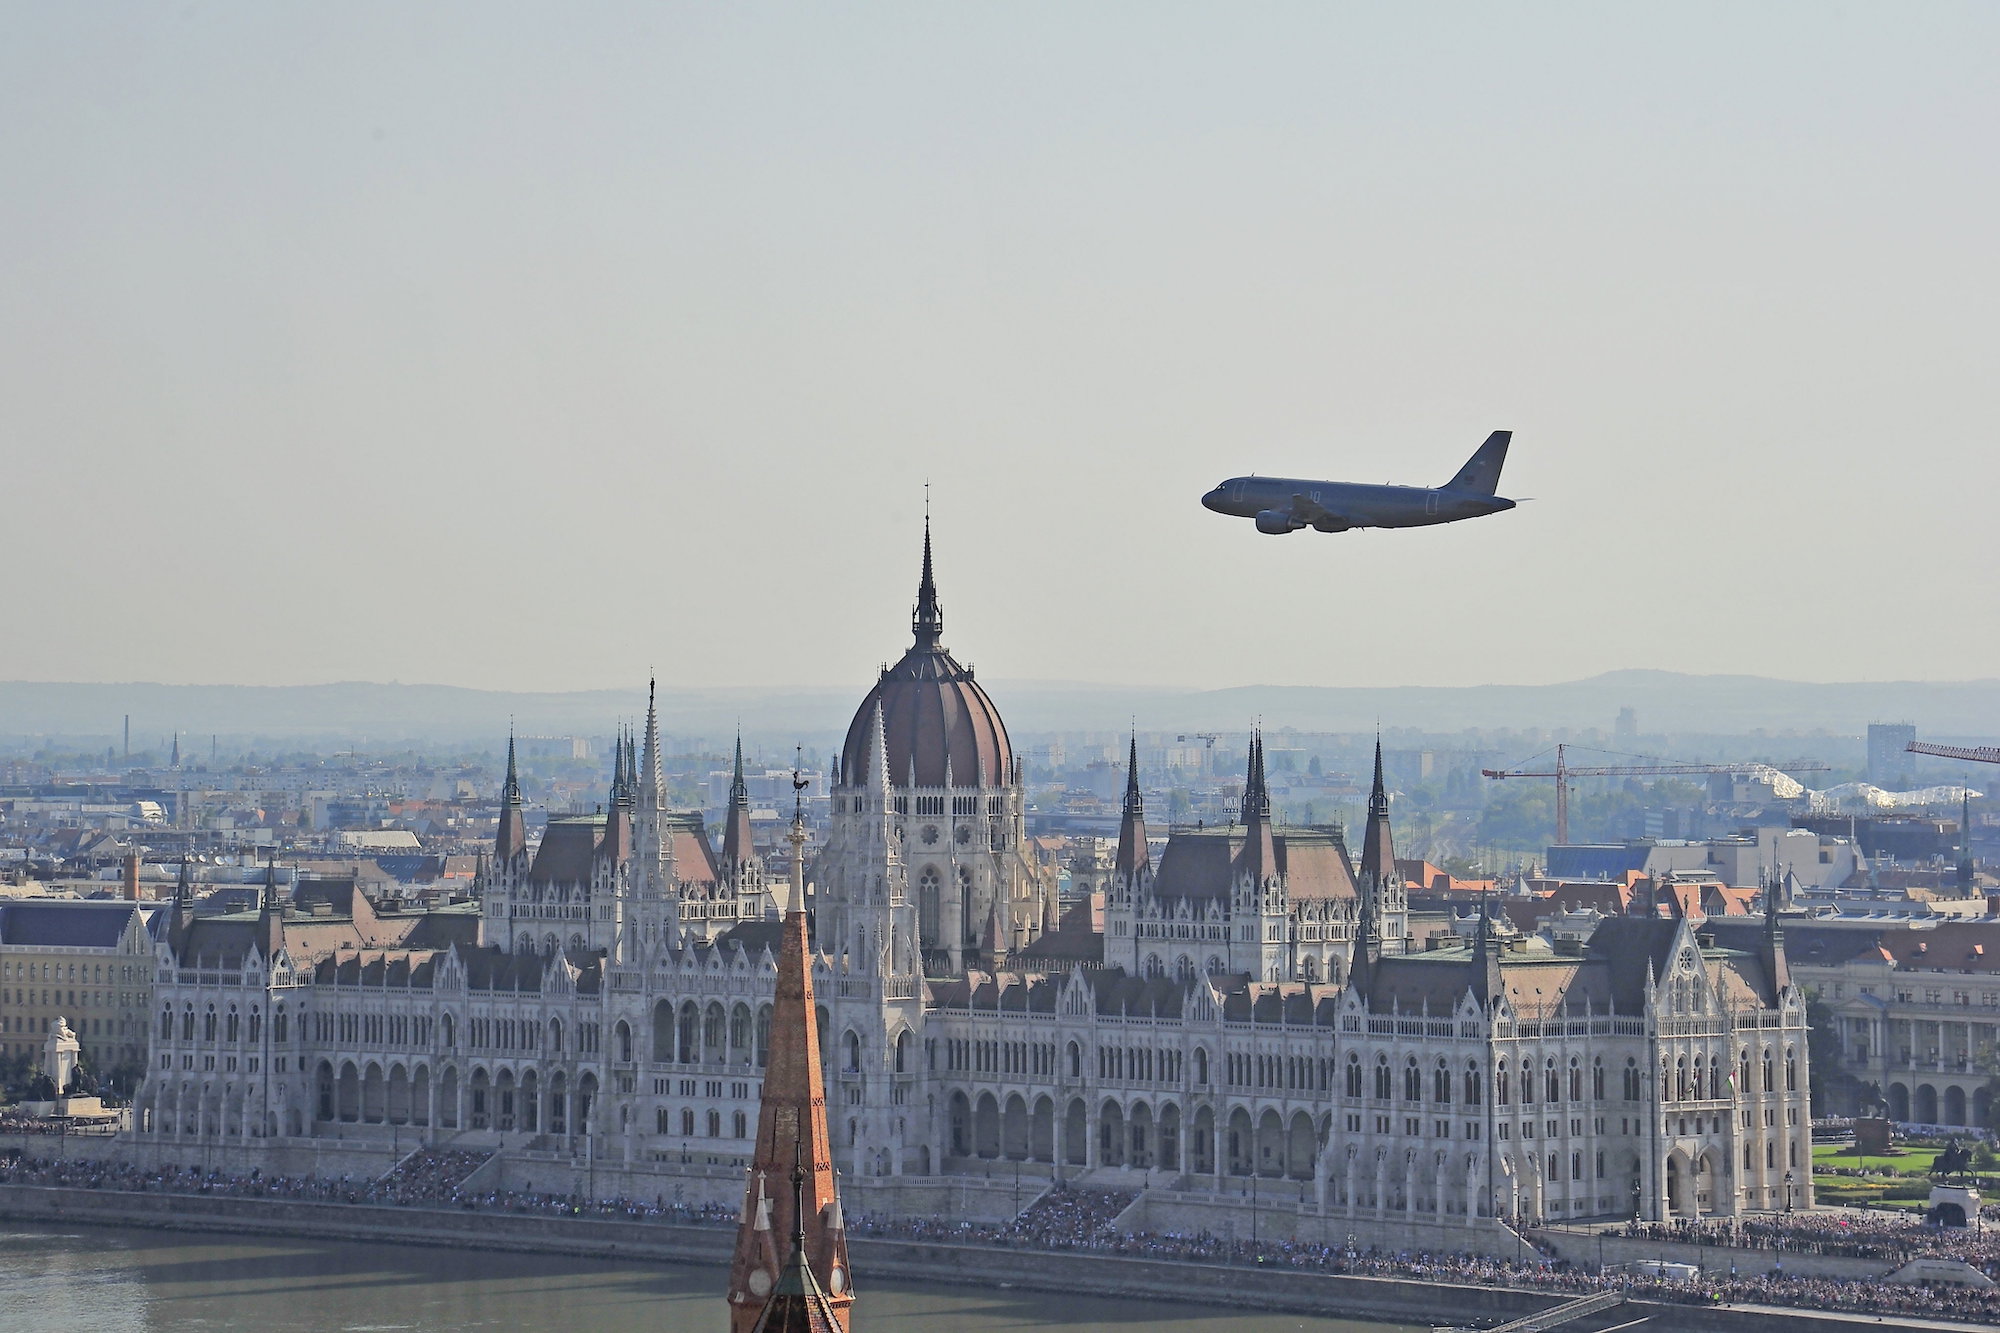 A Magyar Honvédség A319 szállító repülőgépének díszelgő áthúzása a Duna felett.